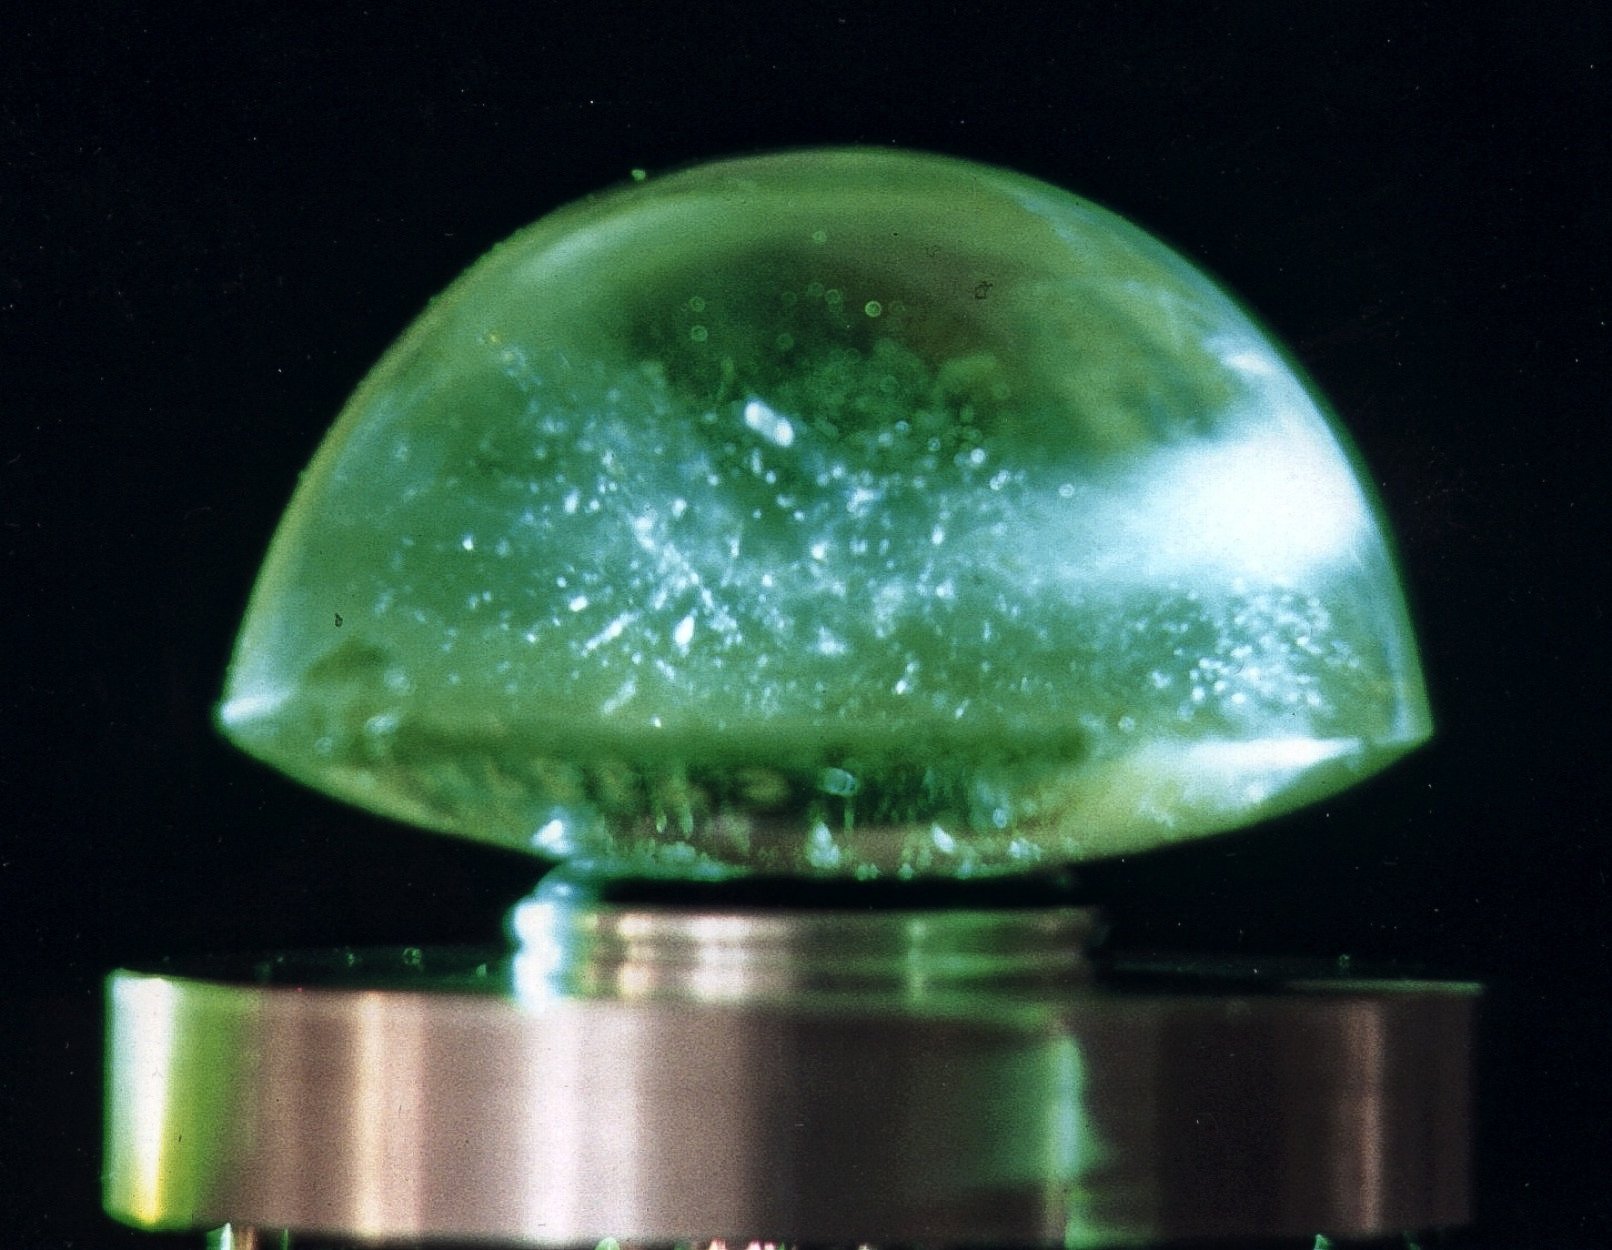 Lensa Visby memberikan bukti bahwa teknik pembuatan lensa canggih telah digunakan oleh pengrajin lebih dari 1,000 tahun yang lalu, pada saat para peneliti baru saja mulai mengeksplorasi hukum pembiasan. Lensa pasti dibuat dengan banyak cobaan dan kesalahan.